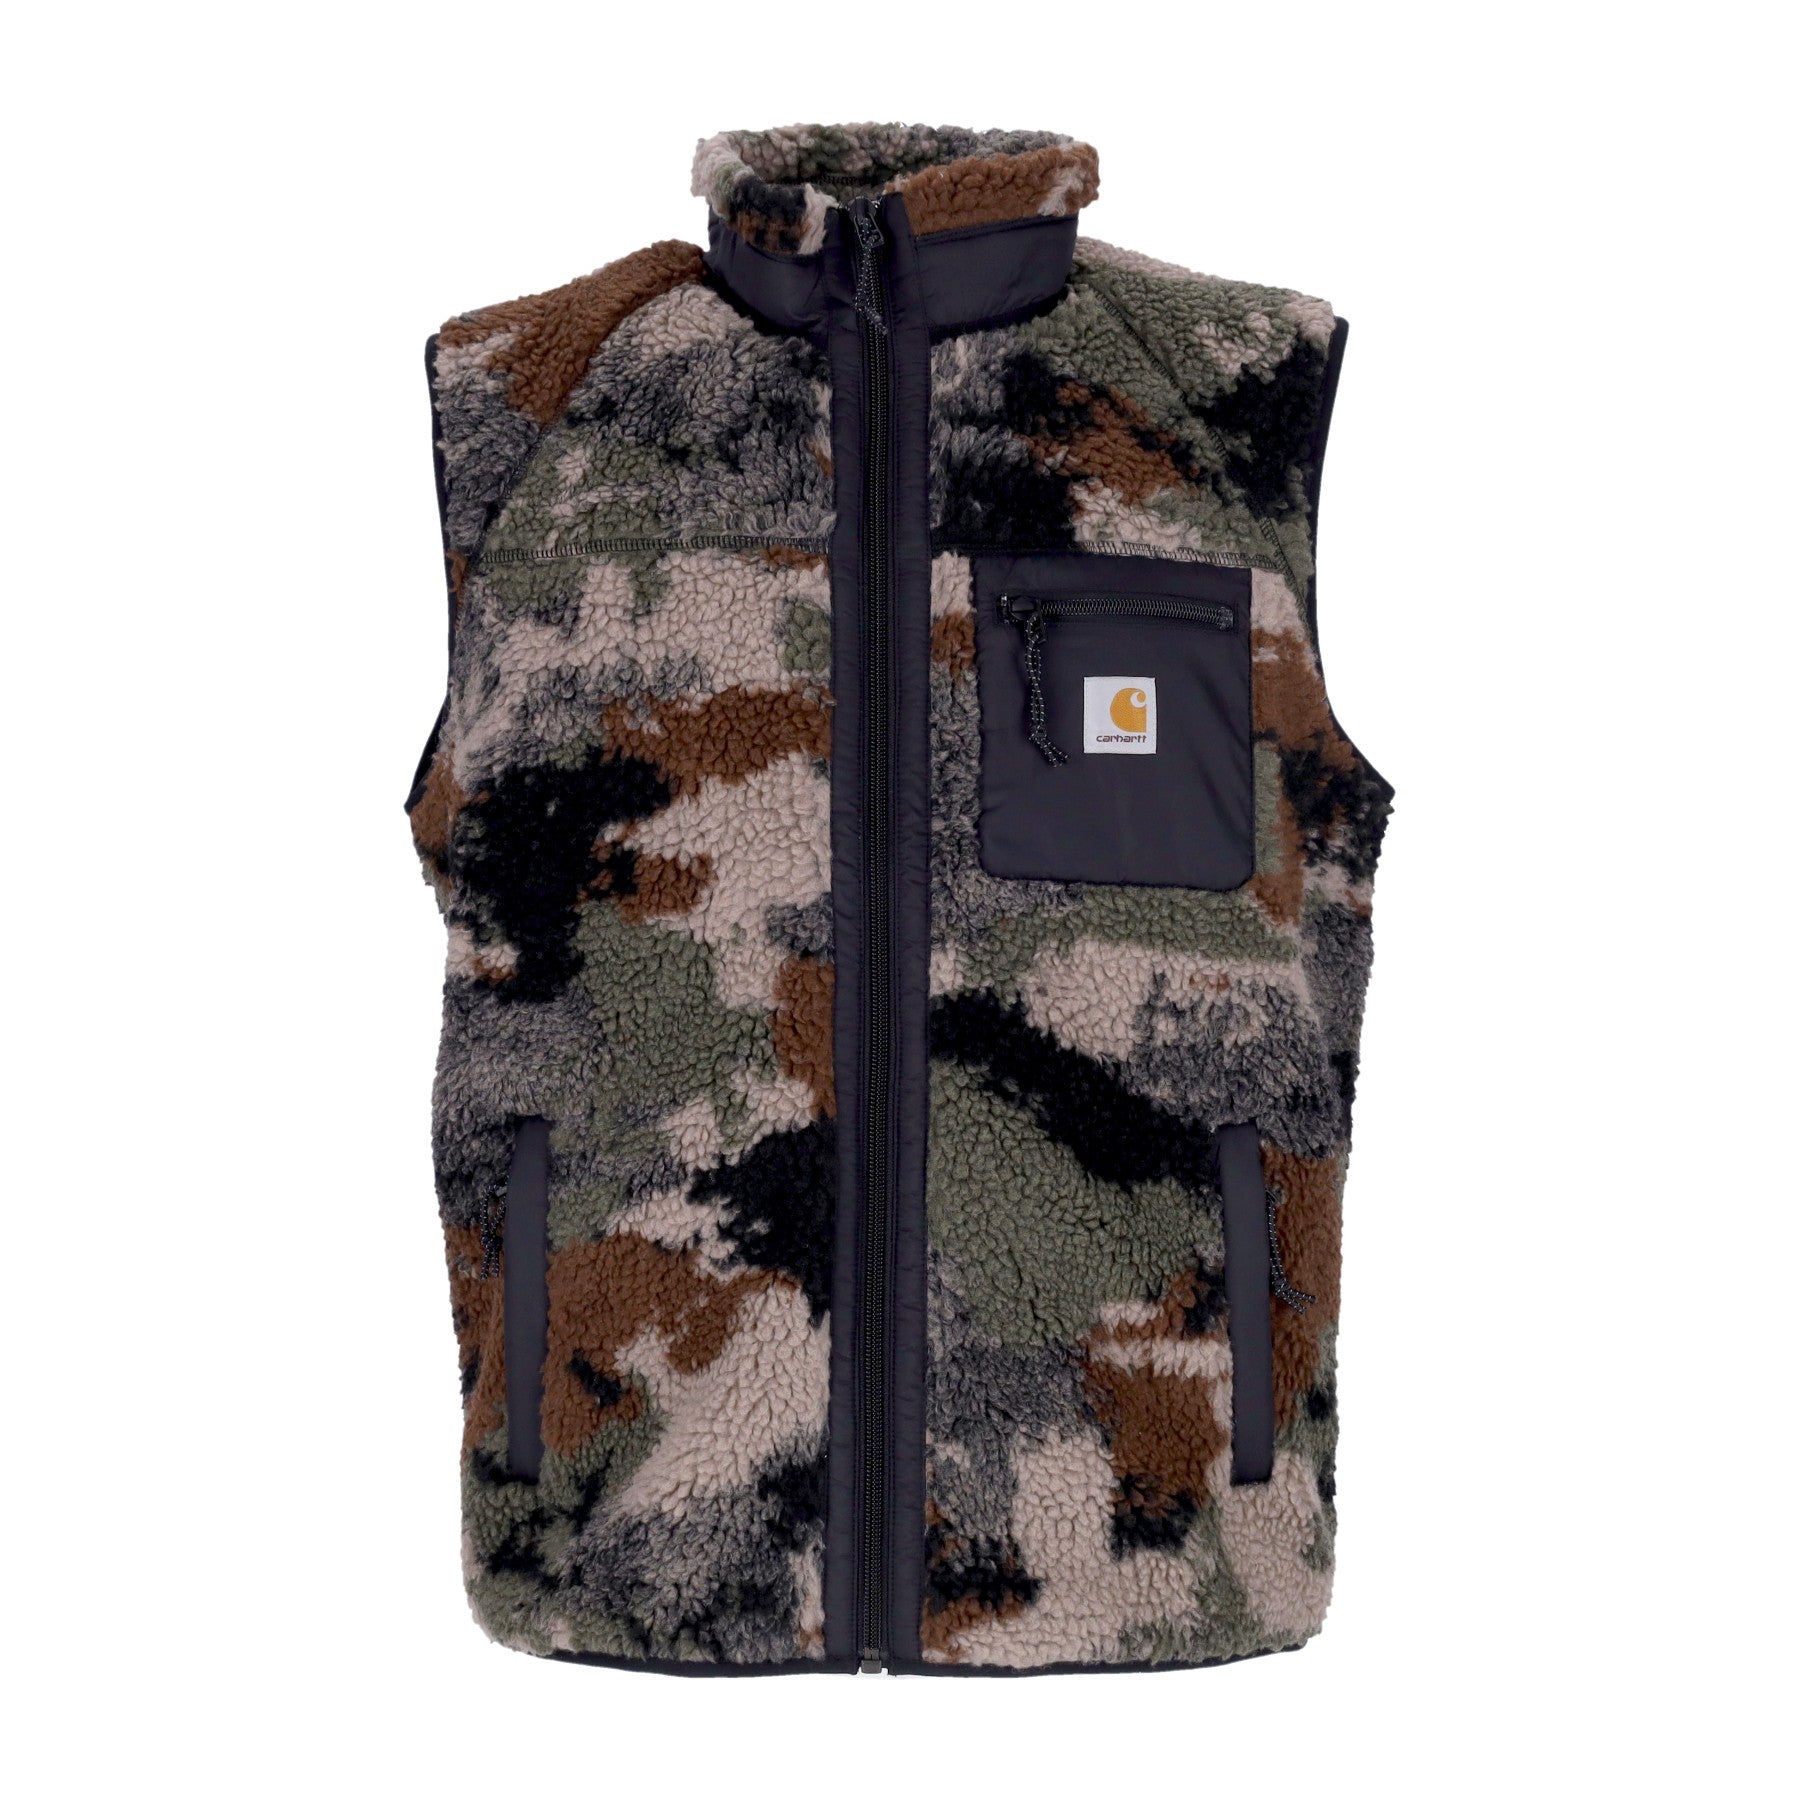 Prentis Vest Liner Trail Men's Vest Jacquard/woodland/black